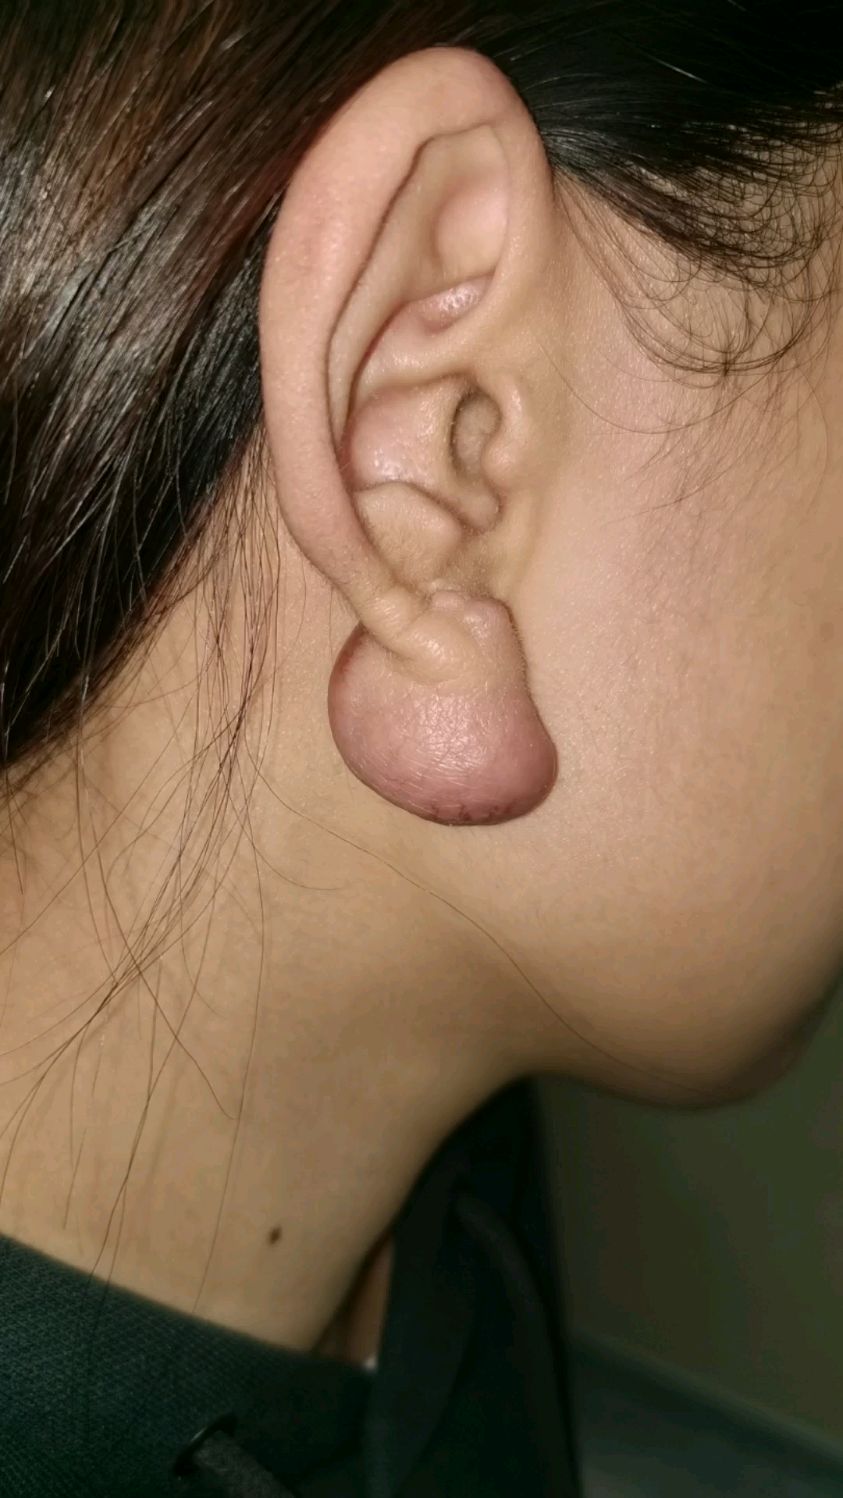 耳朵的瘢痕疙瘩,该怎么治疗呢?